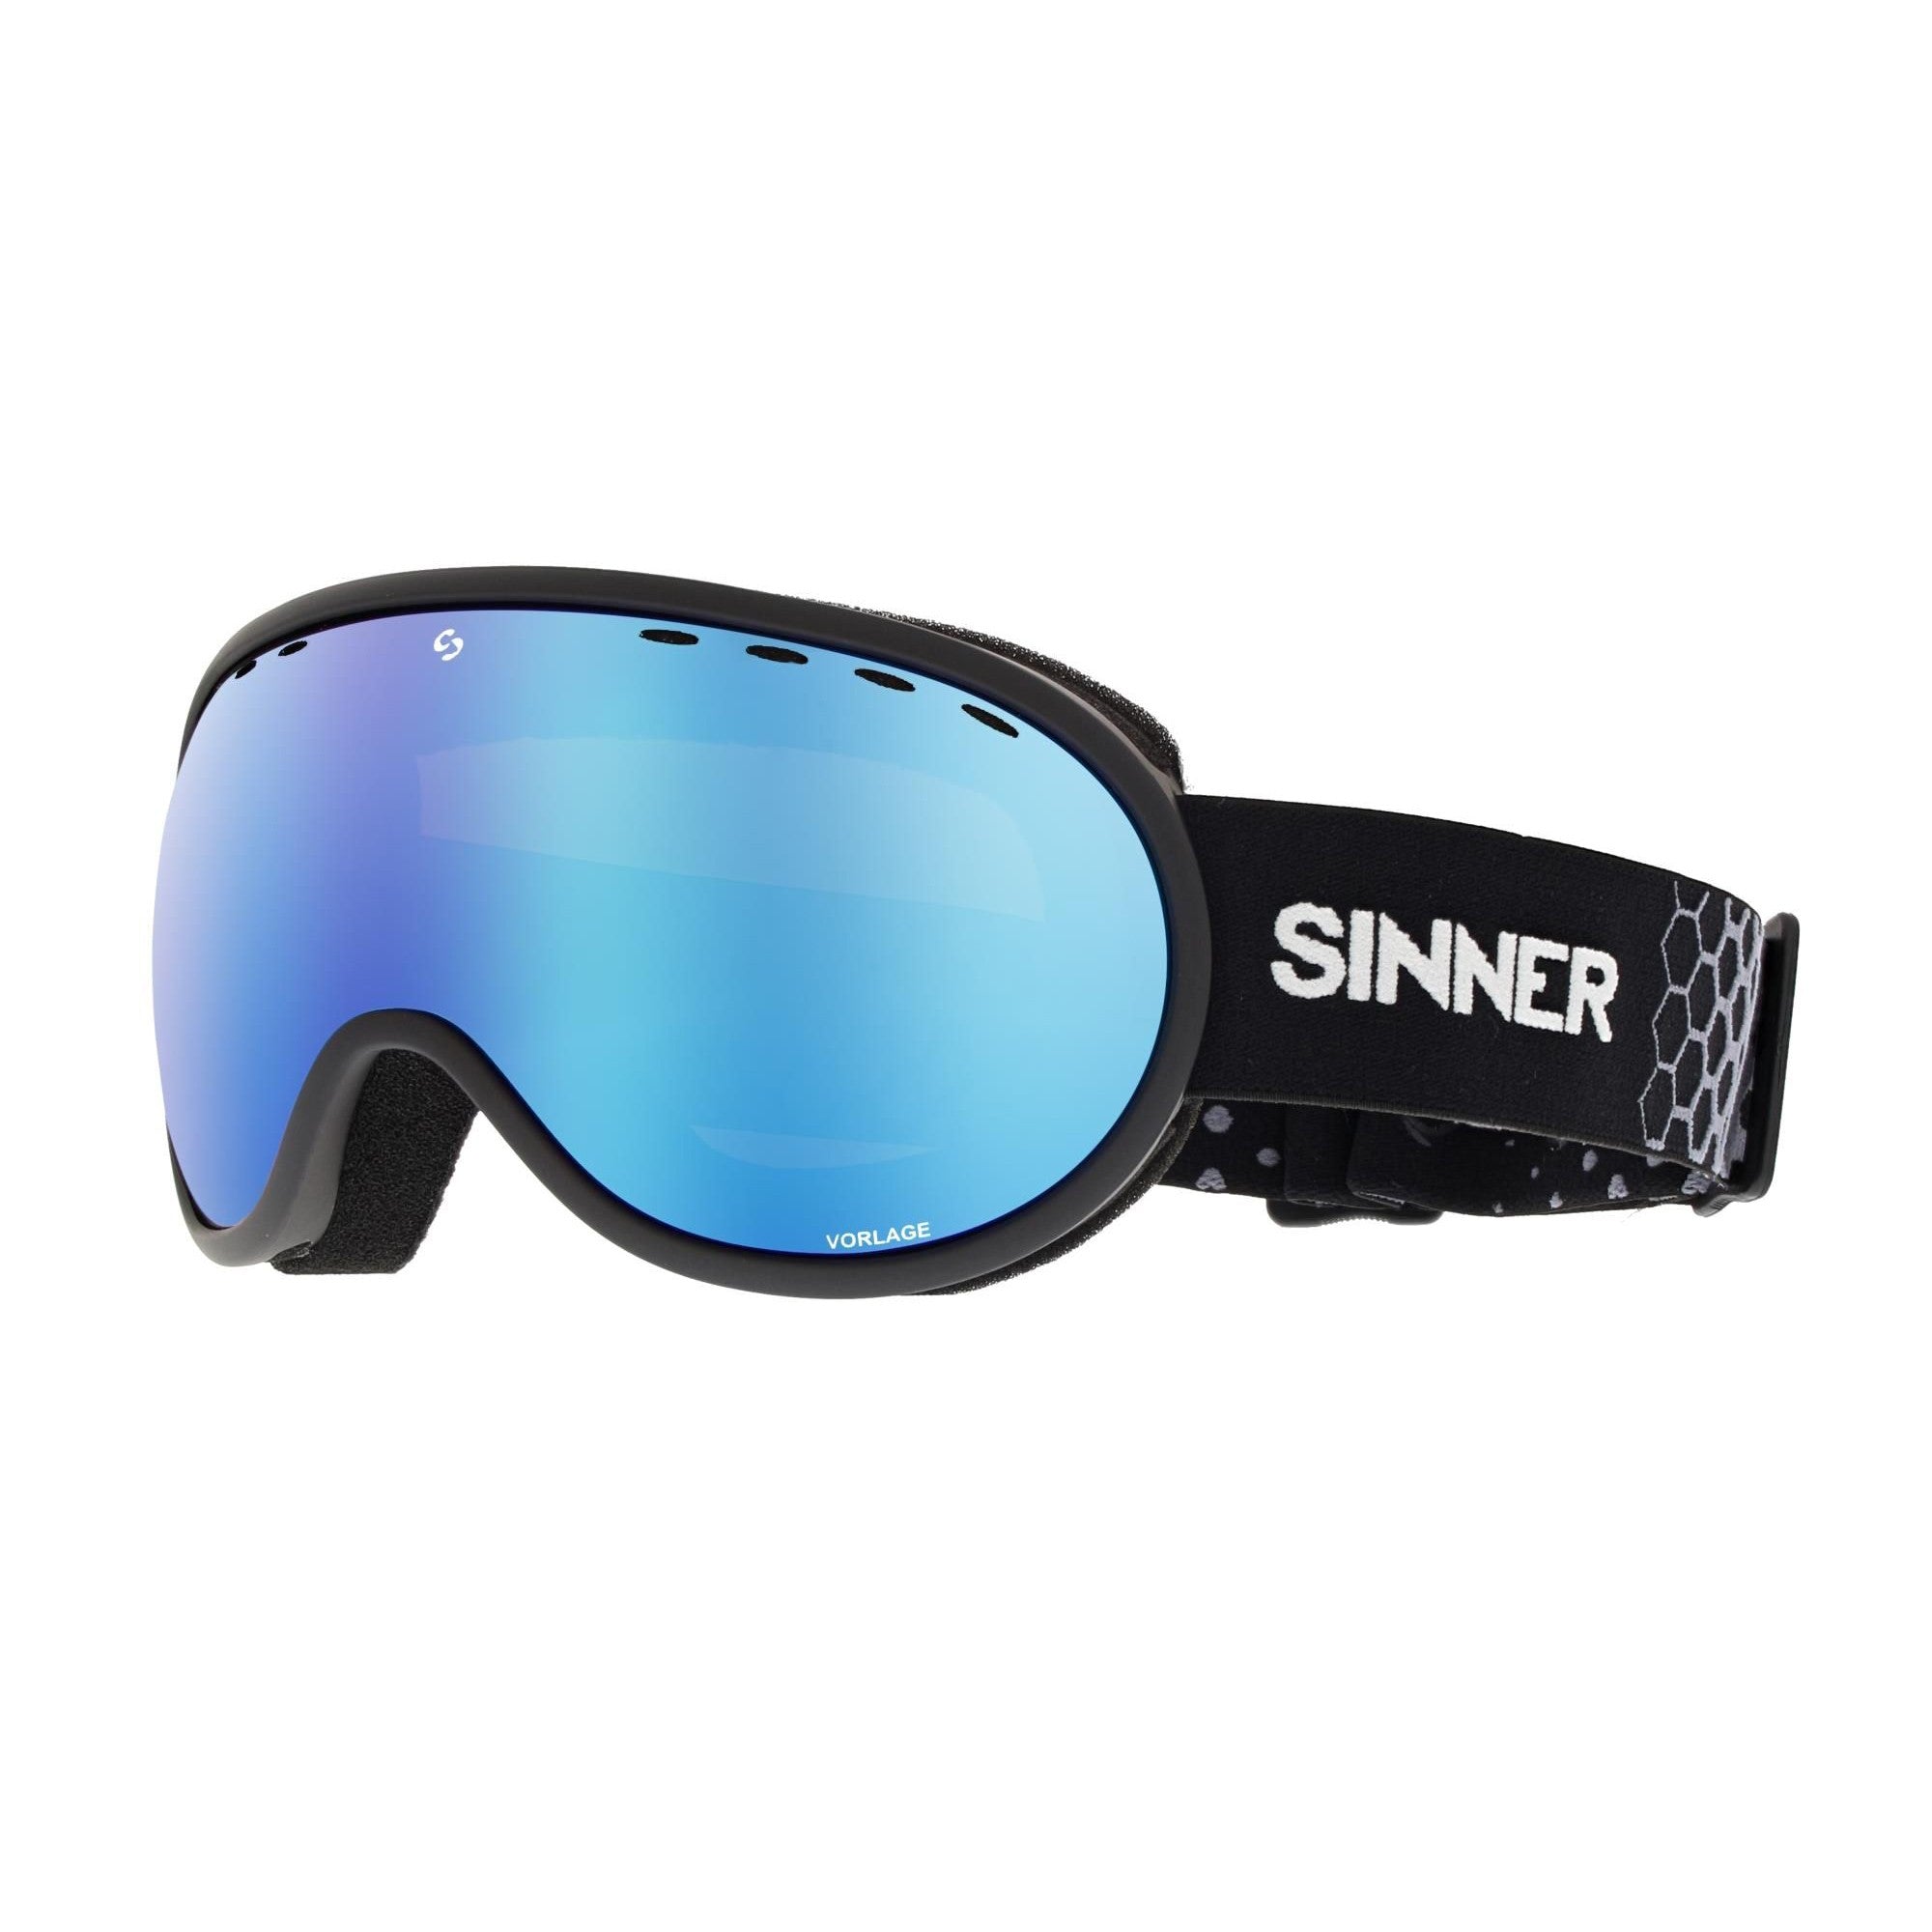 Sinner - Máscara Snow Vorlage - Negro mate / Aceite azul